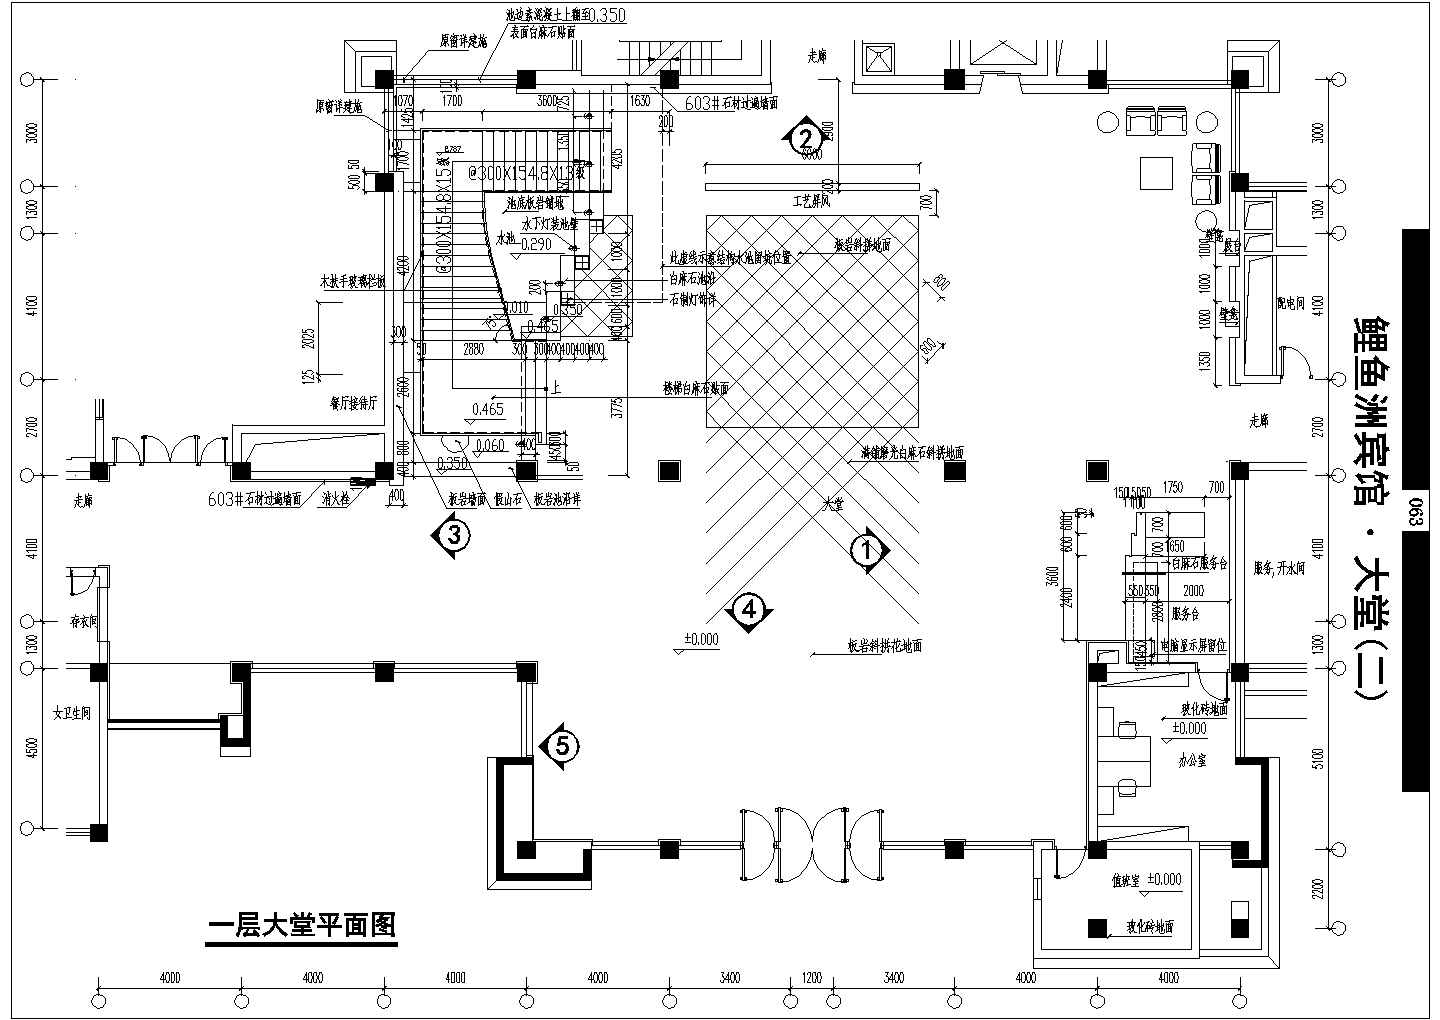 鲤鱼洲宾馆建筑结构施工全套方案设计图纸